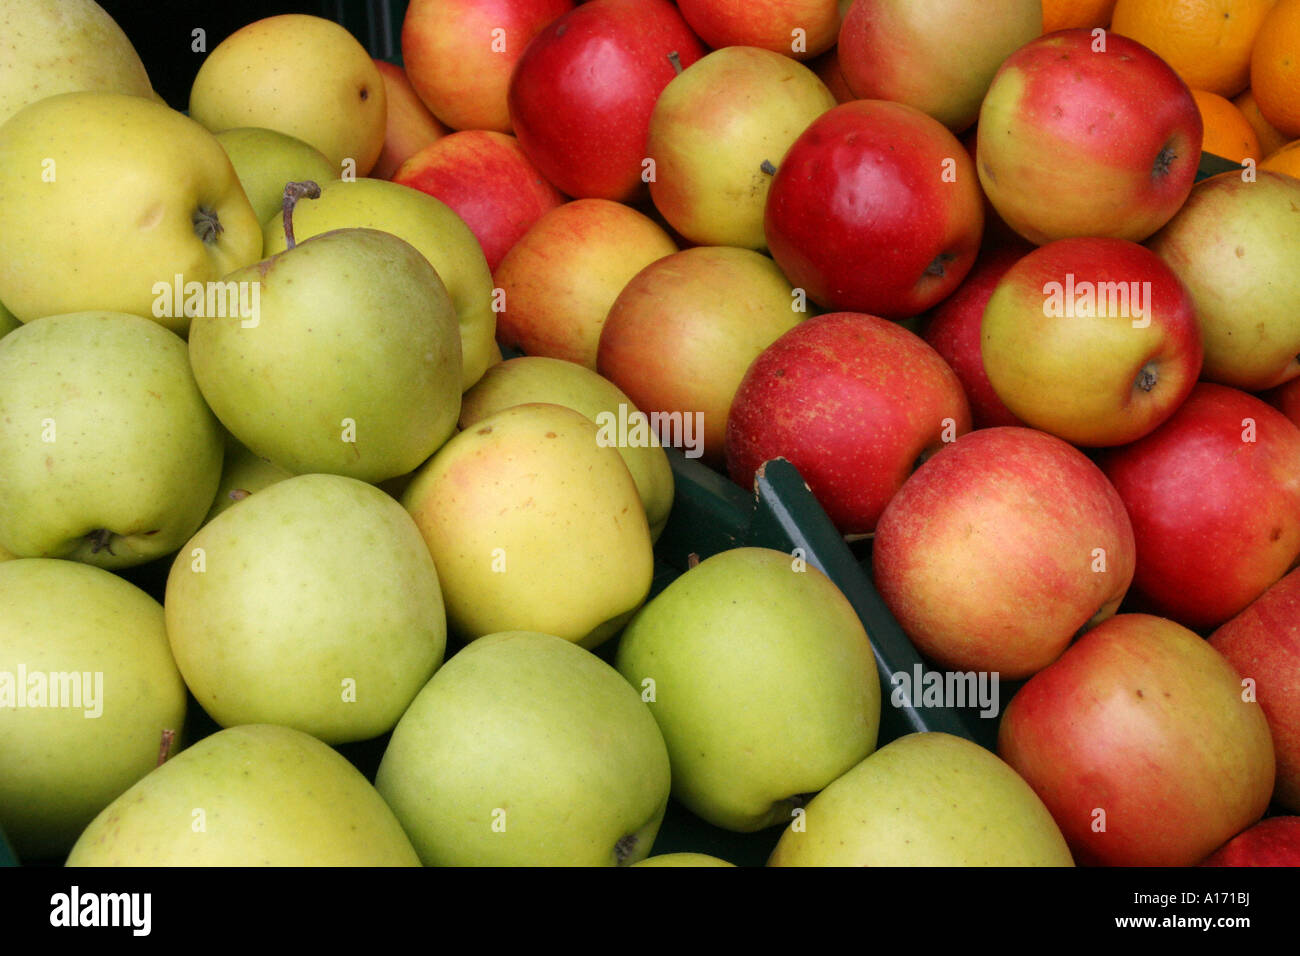 apples Stock Photo